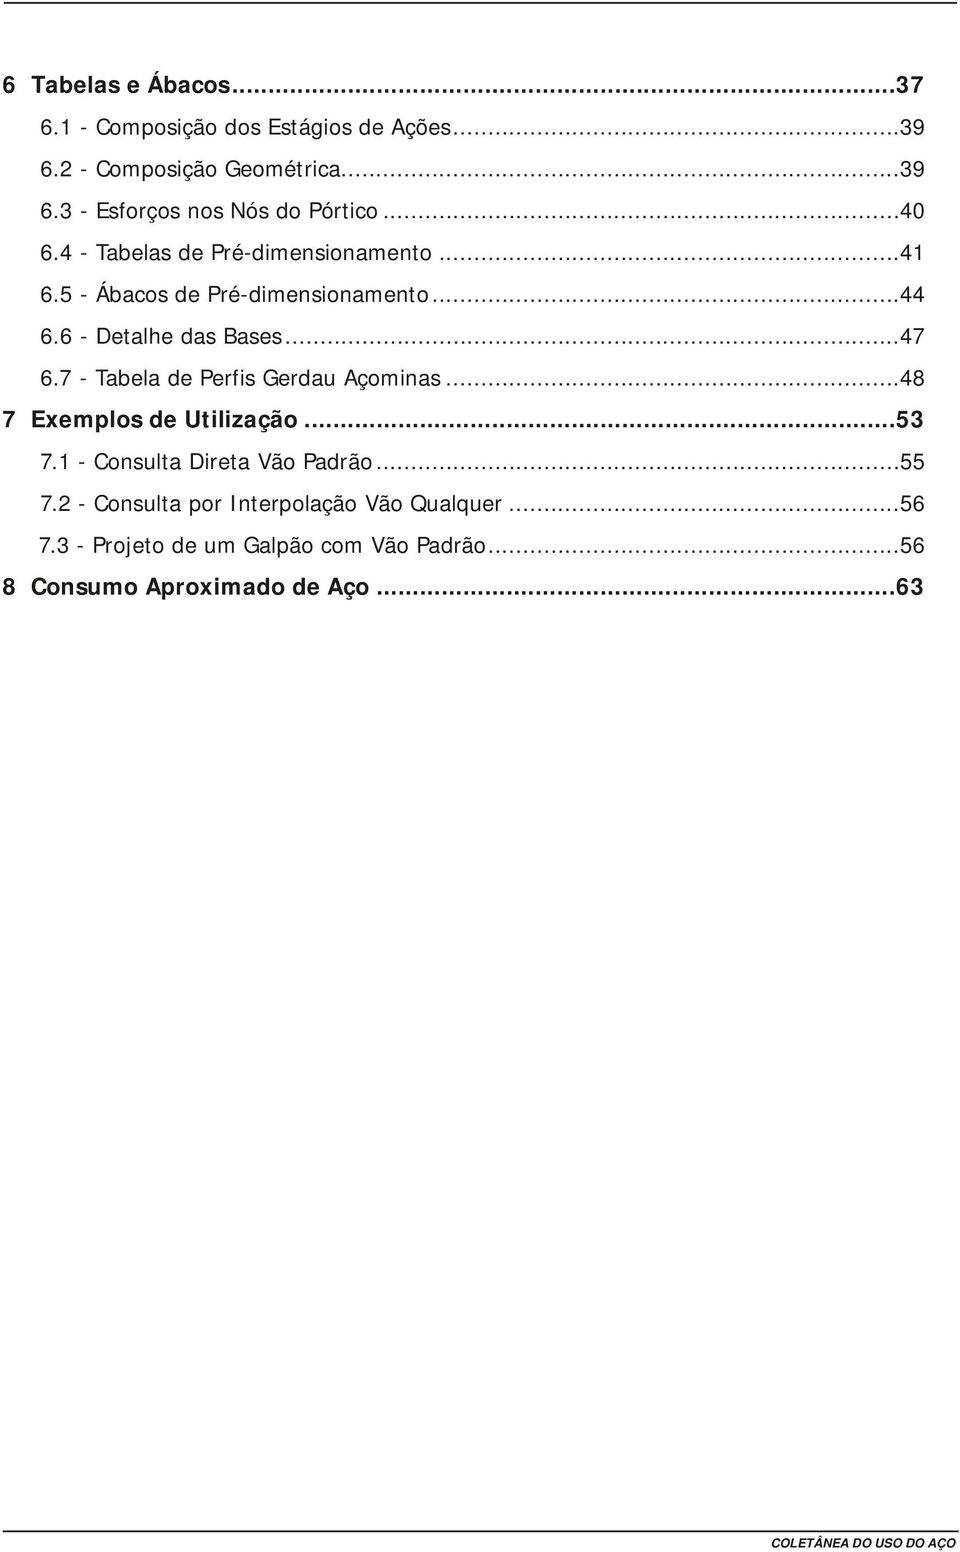 7 - Tabela de Perfis Gerdau Açminas...48 7 Exempls de Utilizaçã...53 7. - Cnsulta Direta Vã Padrã...55 7.